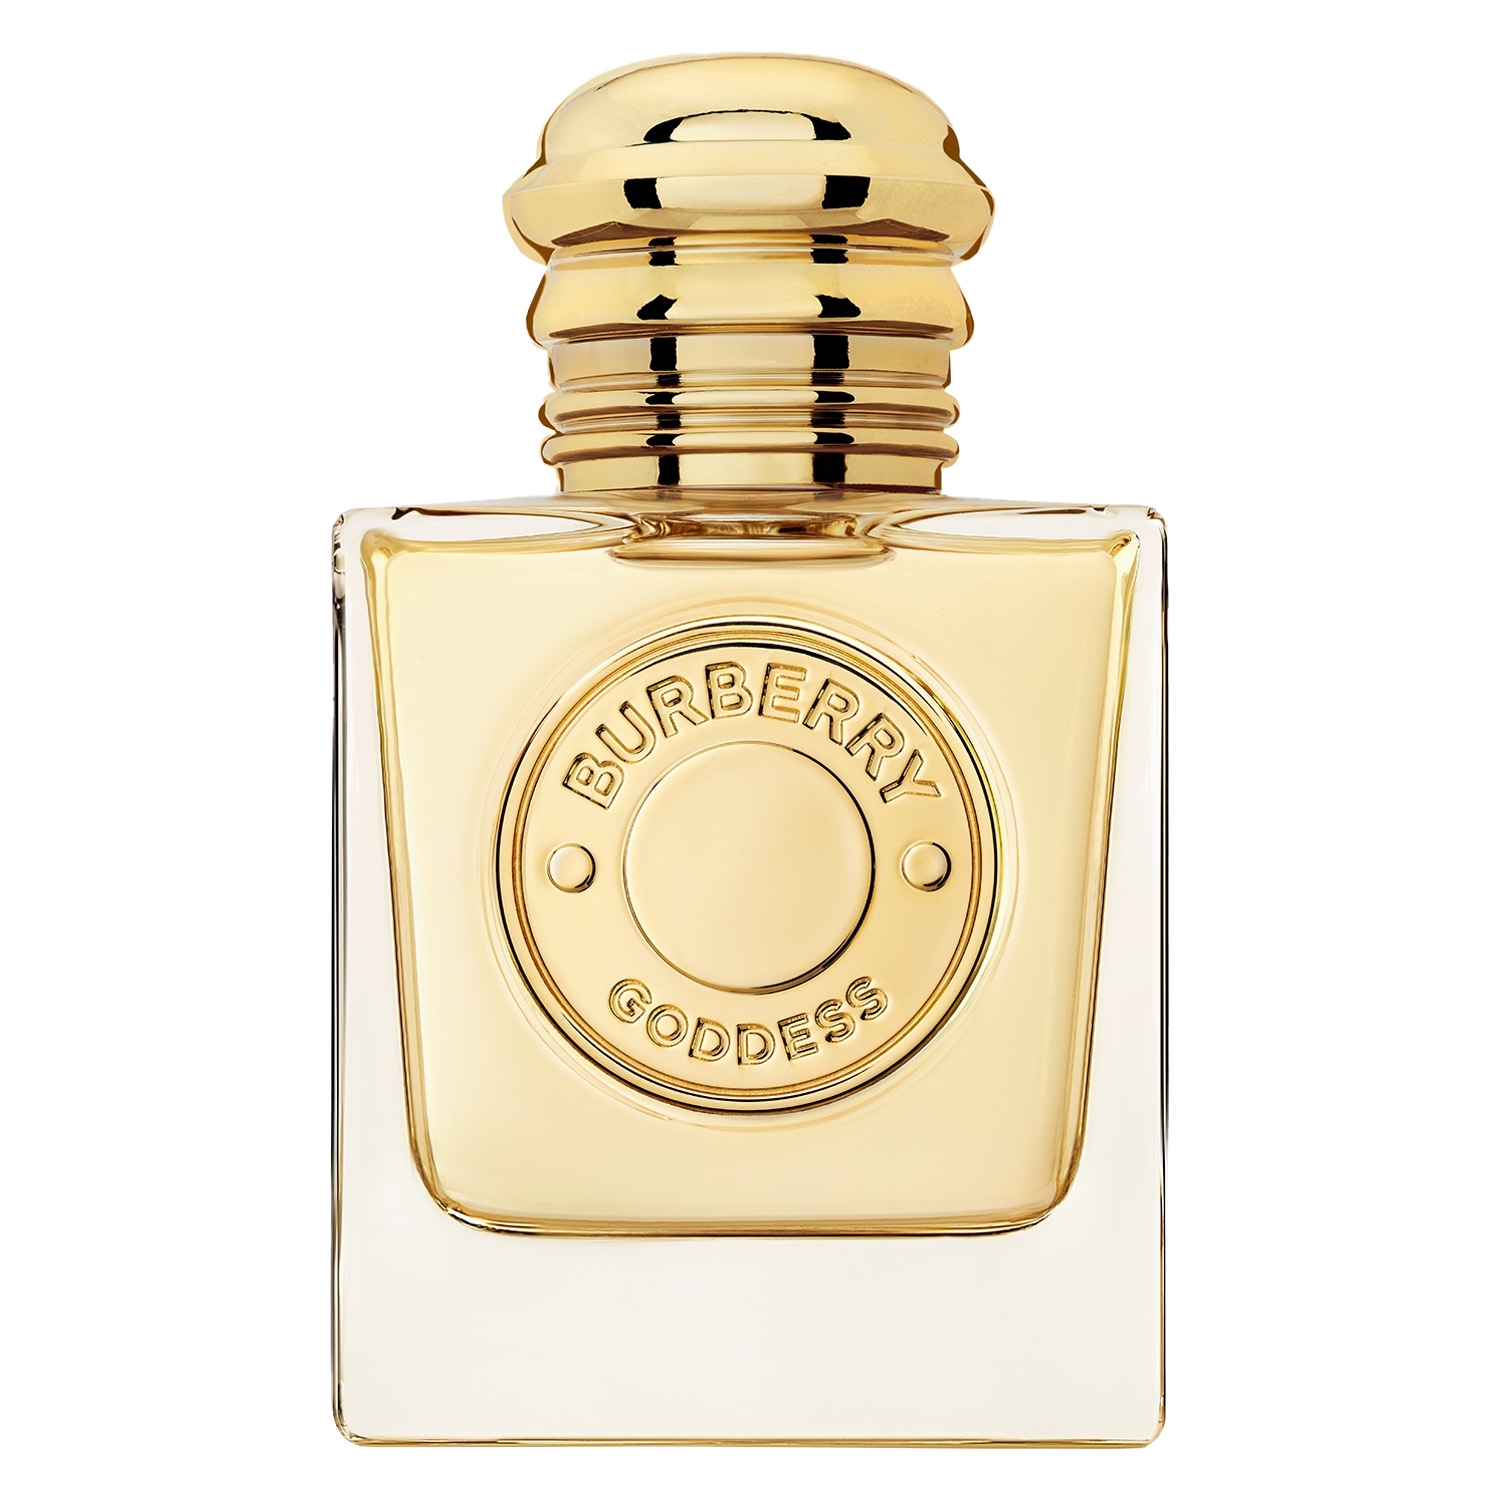 Produktbild von Burberry Goddess - Eau de Parfum